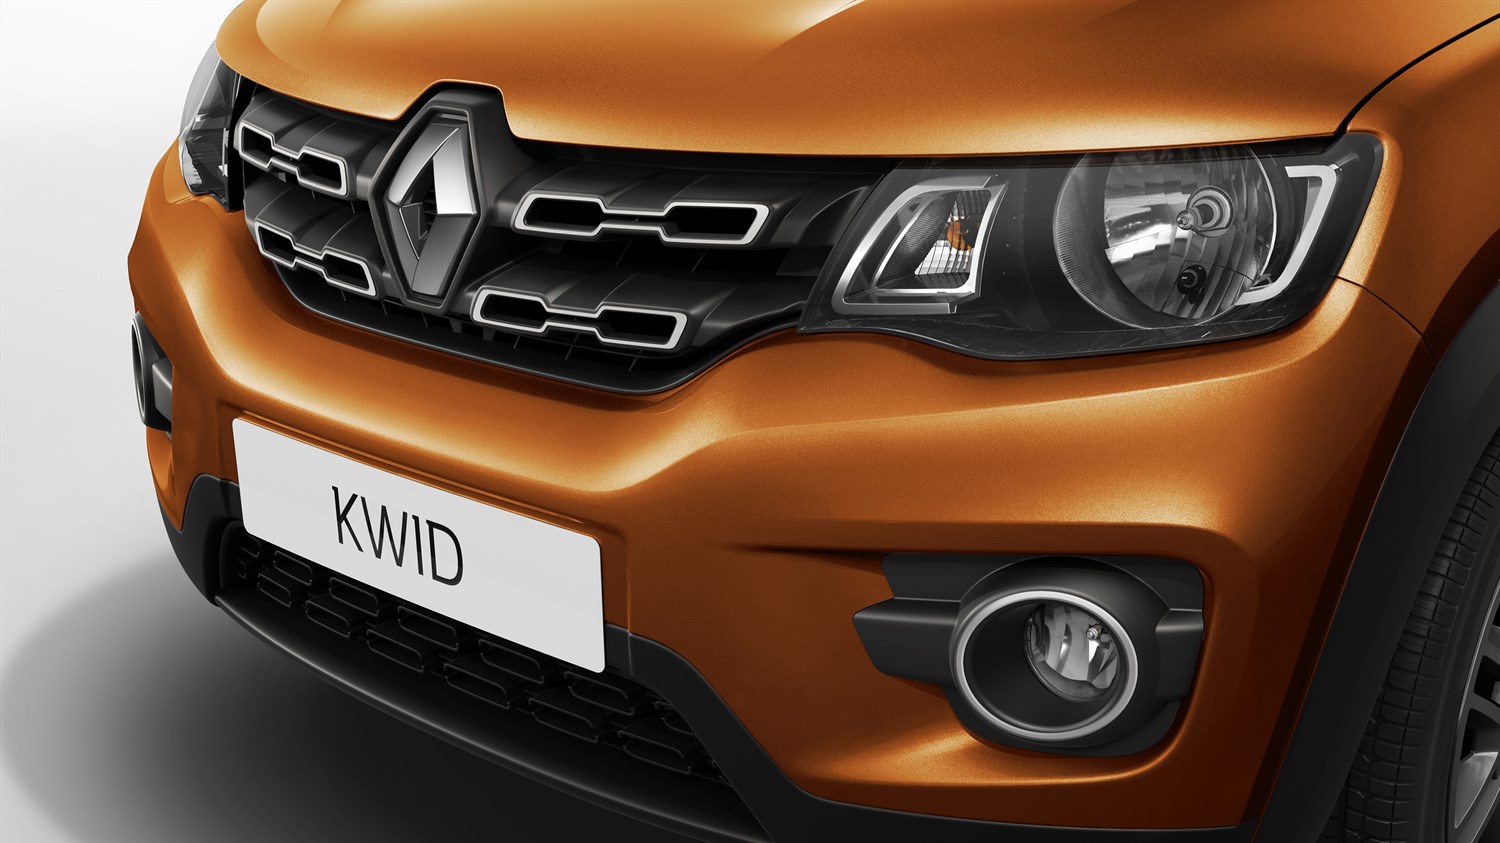 Renault KWID